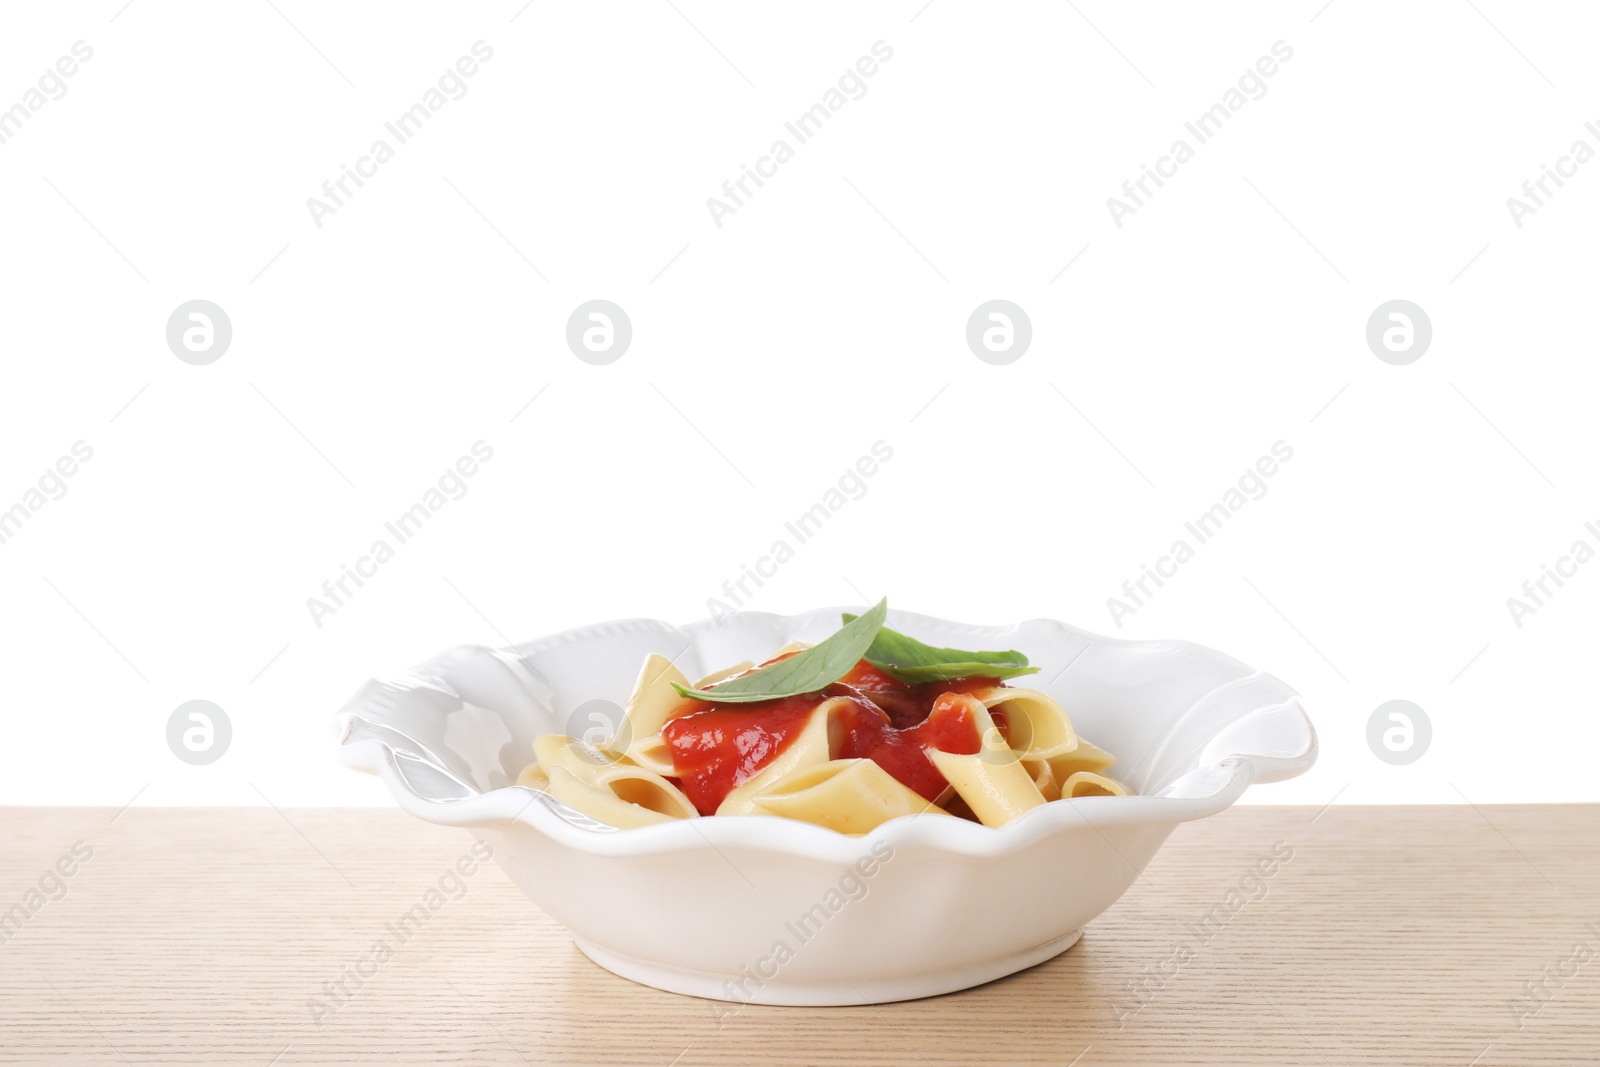 Photo of Delicious maltagliati pasta with tomato sauce on wooden table